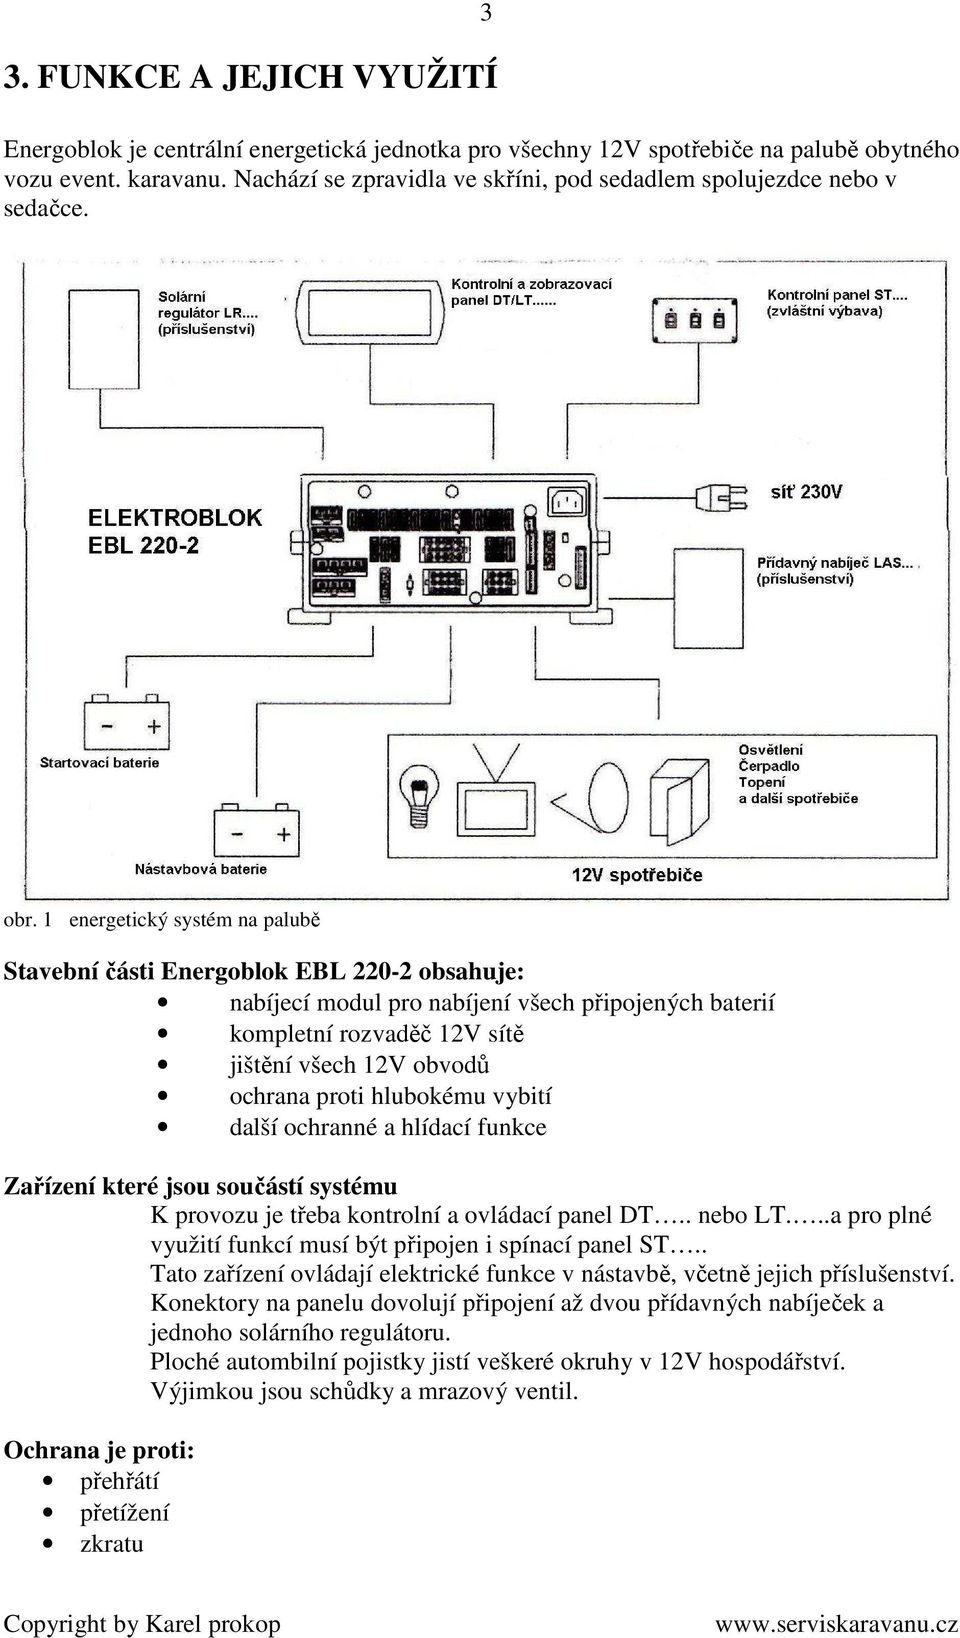 1 energetický systém na palubě Stavební části Energoblok EBL 220-2 obsahuje: nabíjecí modul pro nabíjení všech připojených baterií kompletní rozvaděč 12V sítě jištění všech 12V obvodů ochrana proti